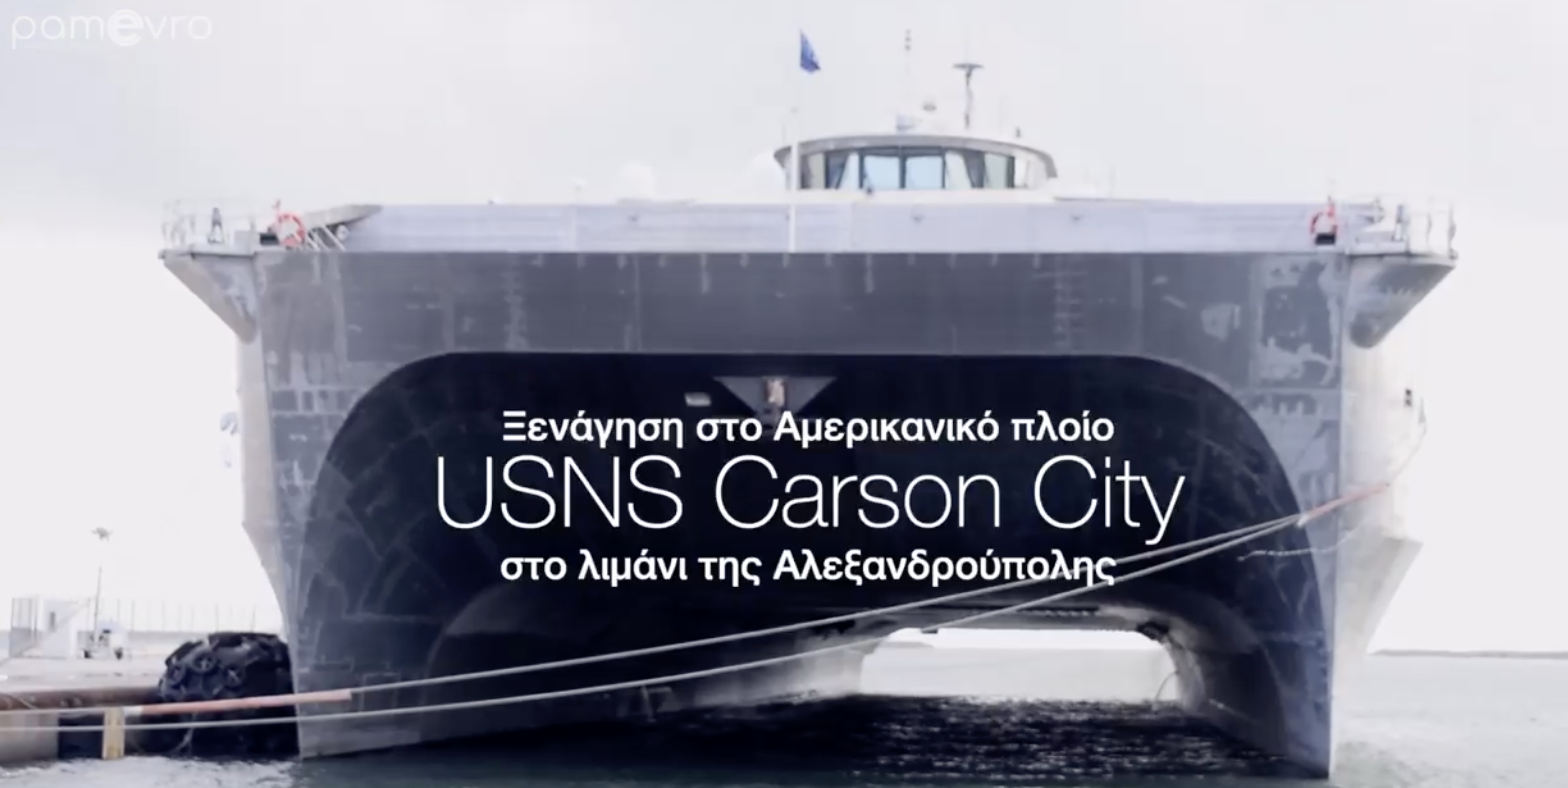 Βίντεο από το εσωτερικό του USNS Carson City, που βρίσκεται στην Αλεξανδρούπολη